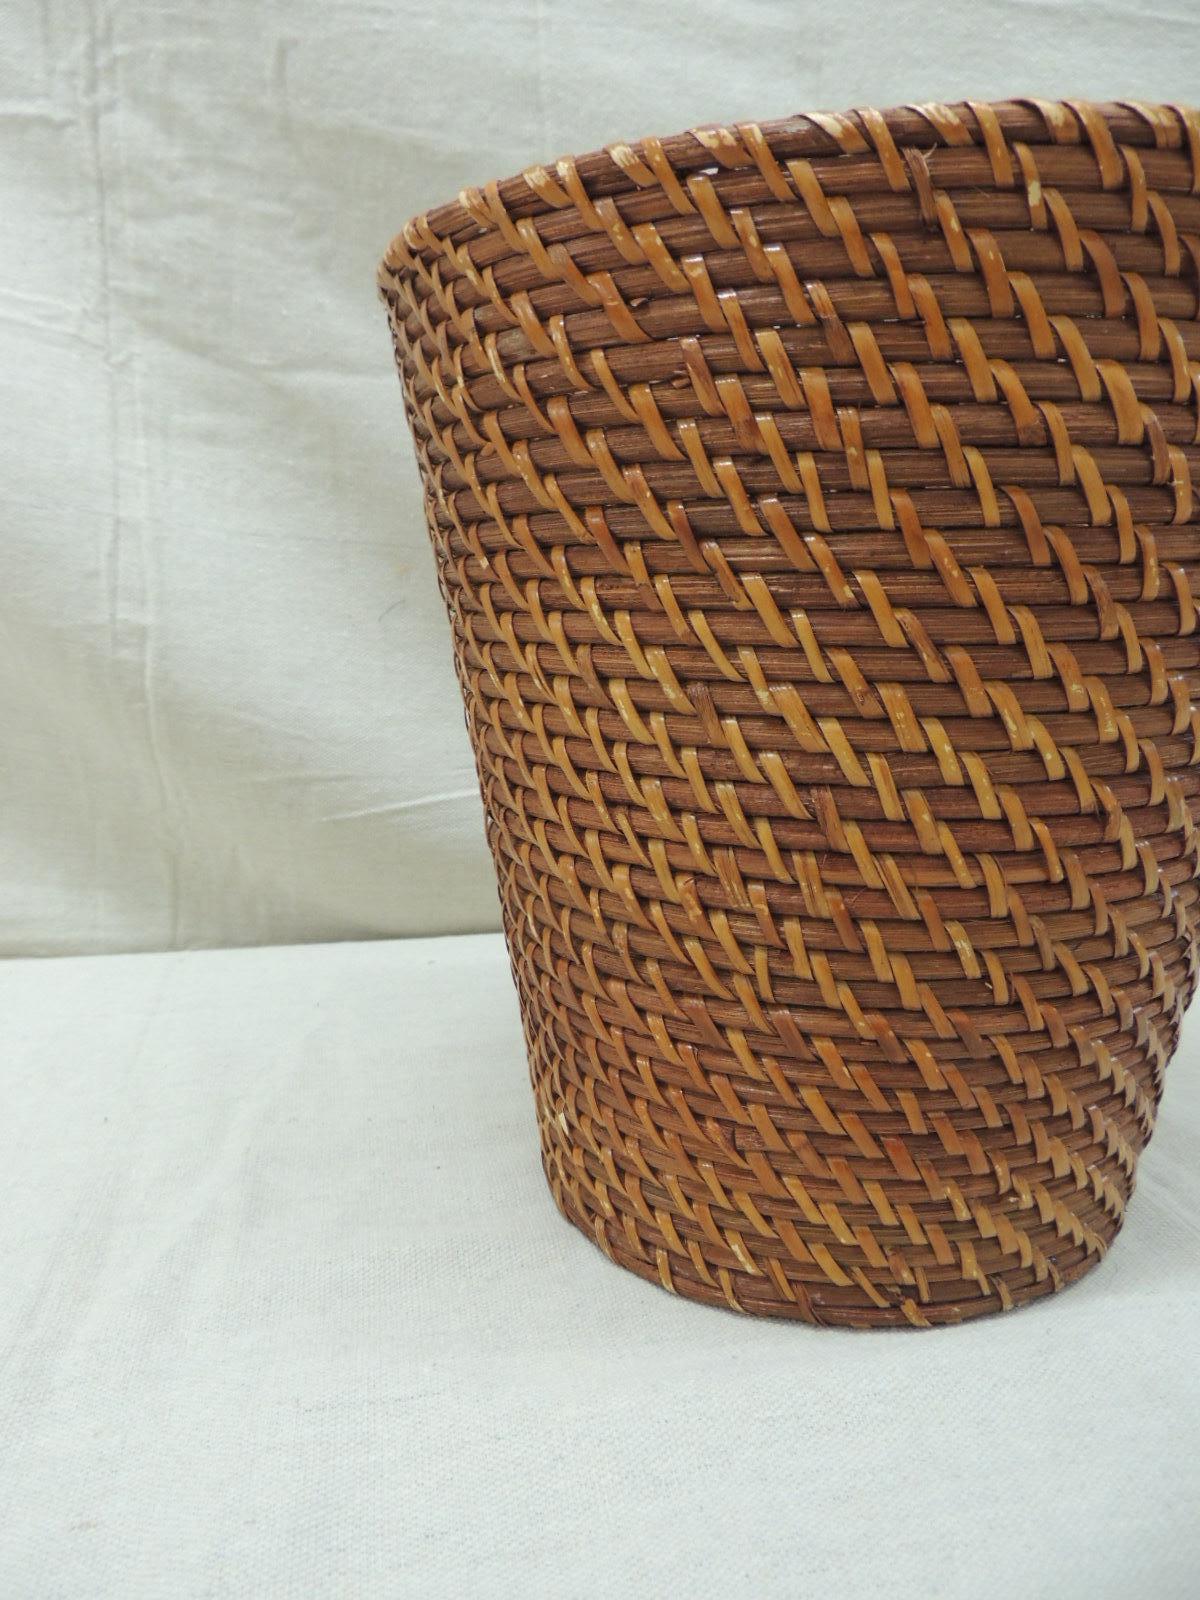 Round woven rattan wastebasket.
Size: 12